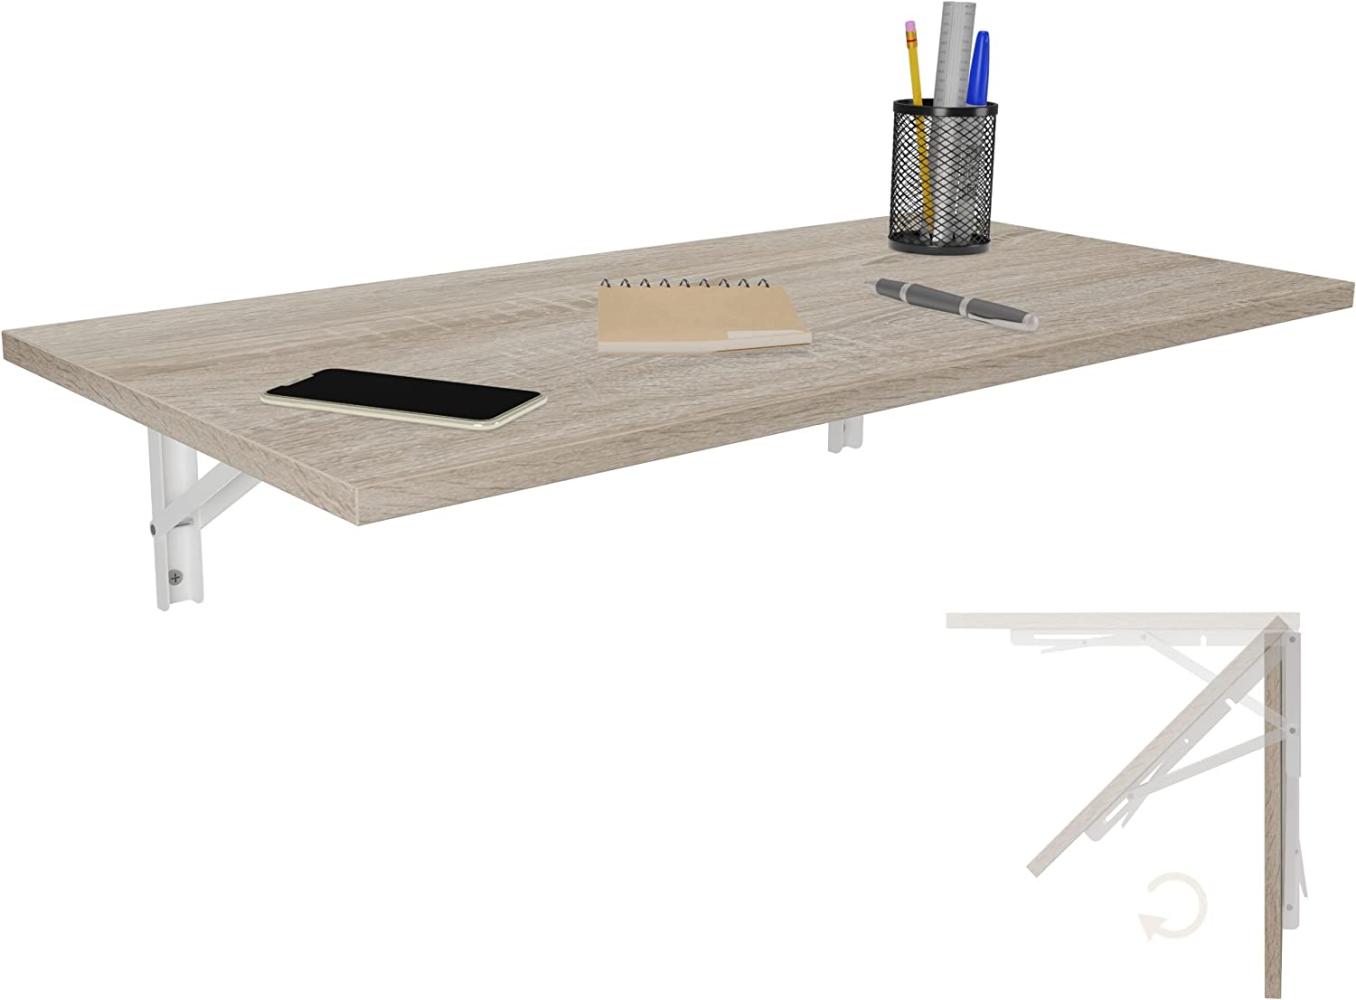 Wandklapptisch Schreibtisch Tischplatte 80x40 cm in Sonoma Eiche Klapptisch Esstisch Küchentisch für die Wand Bartisch Stehtisch Wandtisch Tisch klappbar zur Wandmontage im Büro Küche Bild 1